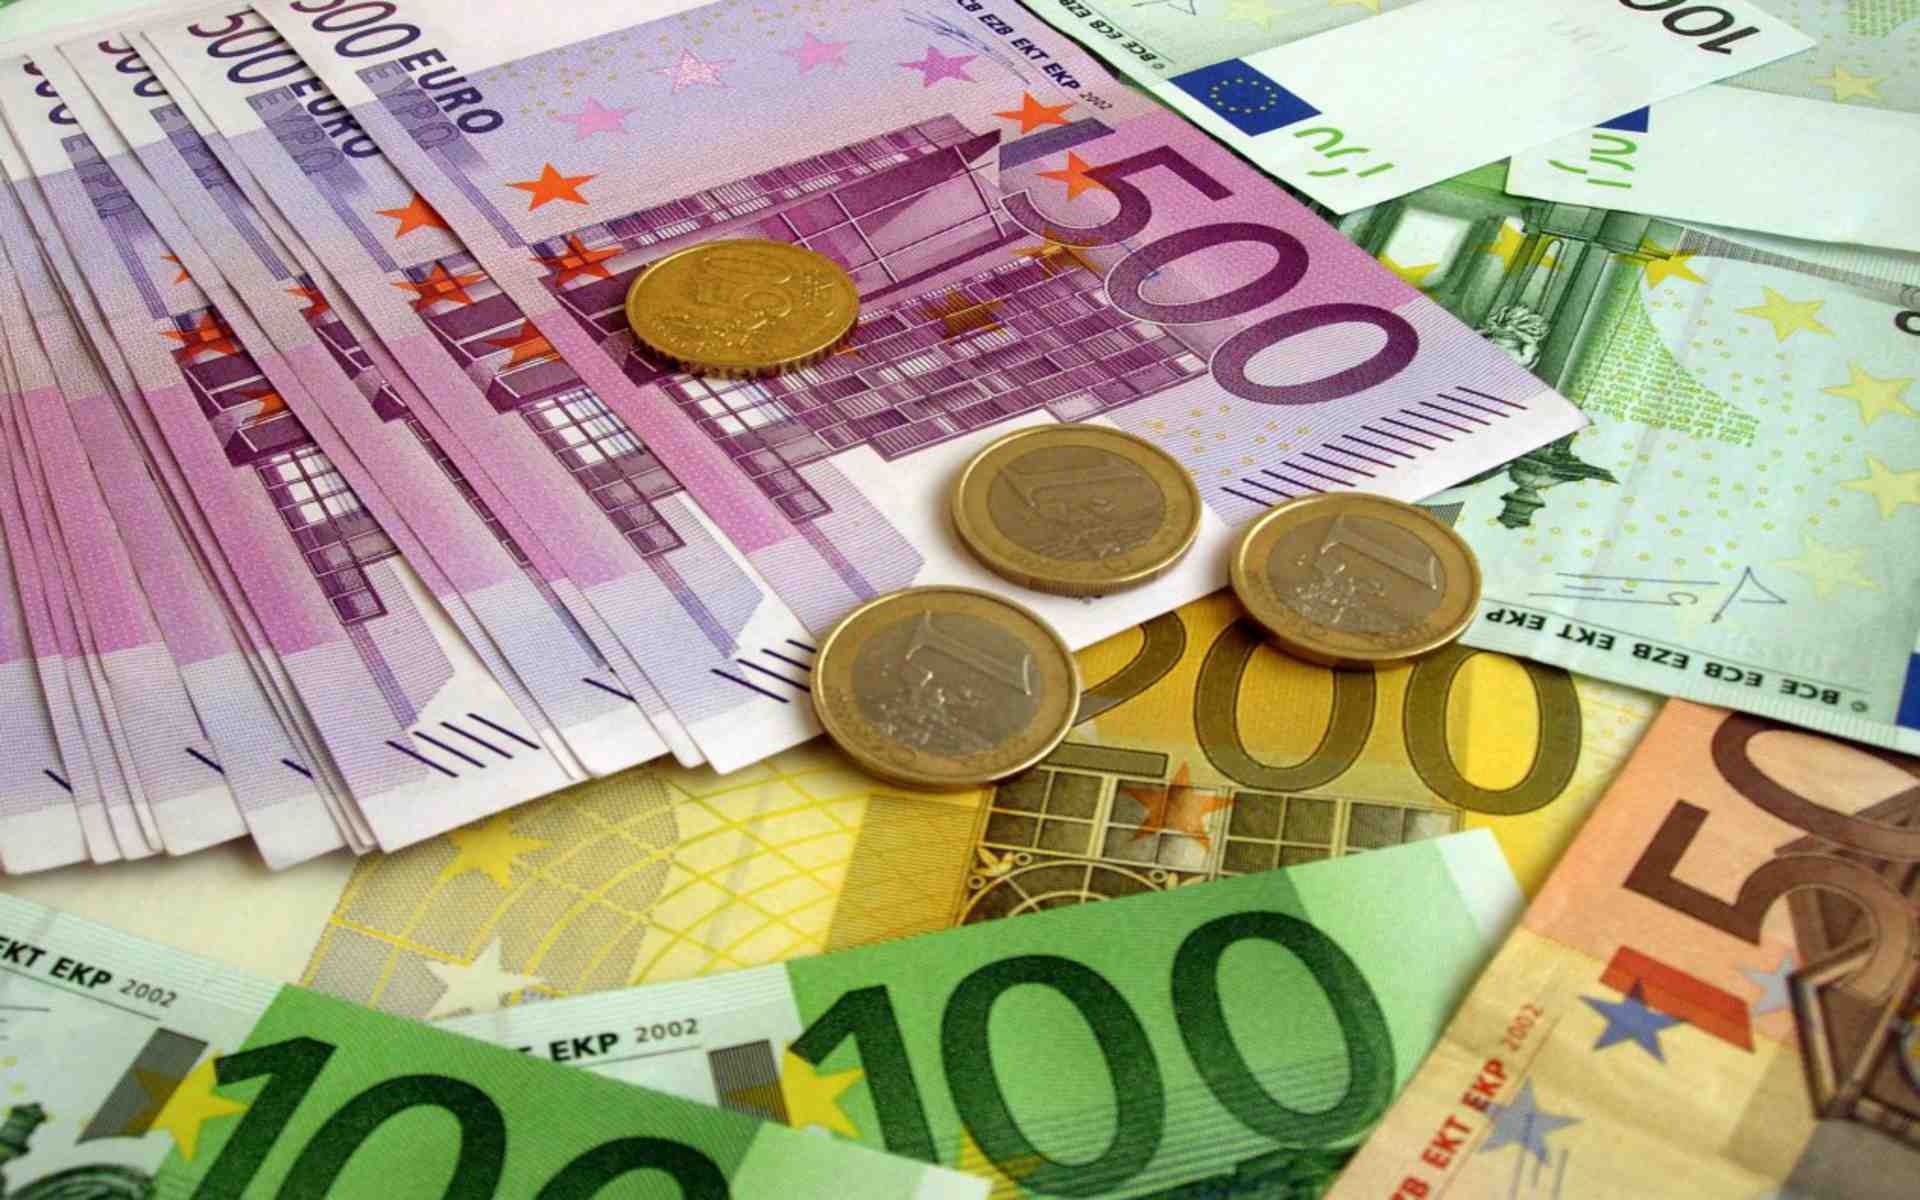 ユーロ壁紙,お金,現金,紙幣,お金の取り扱い,論文